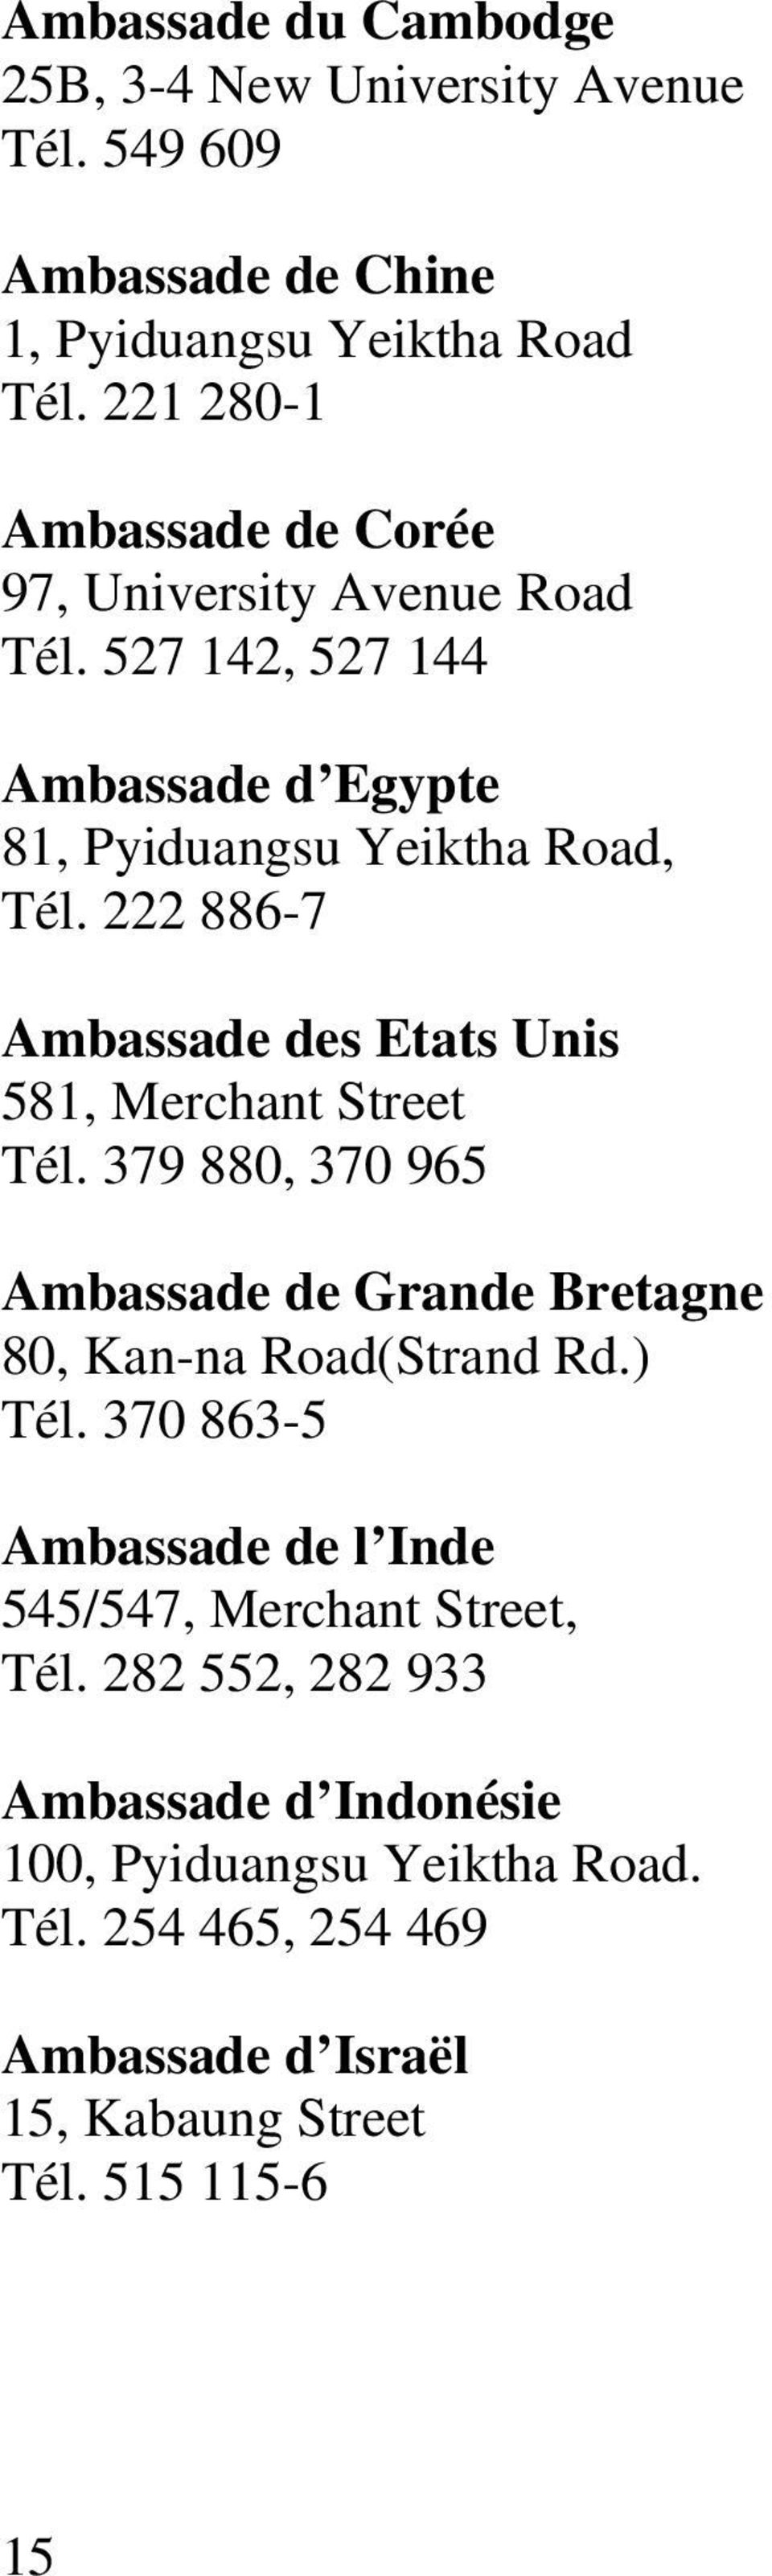 222 886-7 Ambassade des Etats Unis 581, Merchant Street Tél. 379 880, 370 965 Ambassade de Grande Bretagne 80, Kan-na Road(Strand Rd.) Tél.